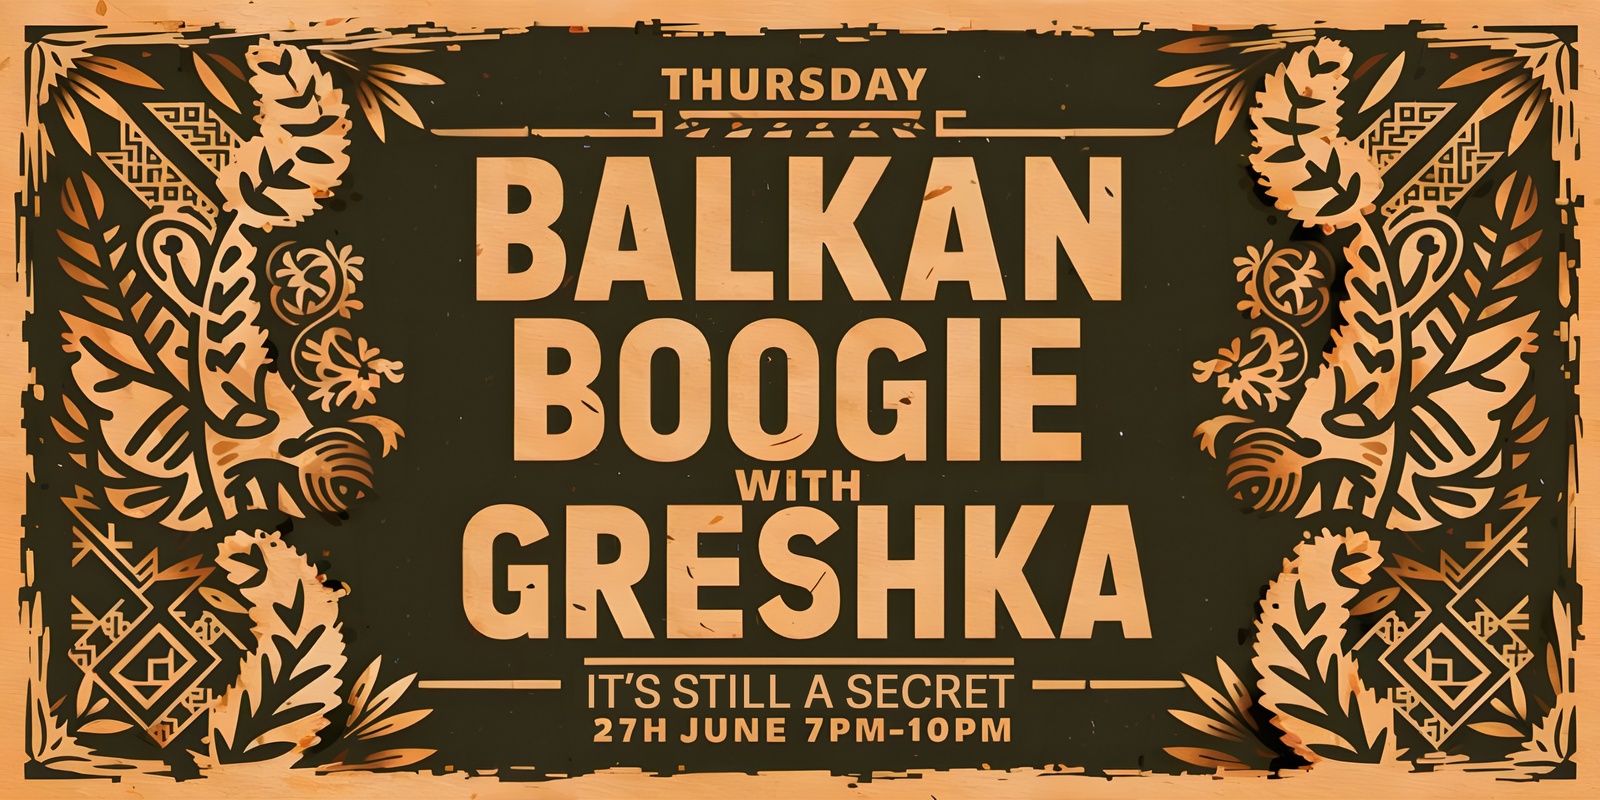 Banner image for Thursday Balkan Boogie with Greshka